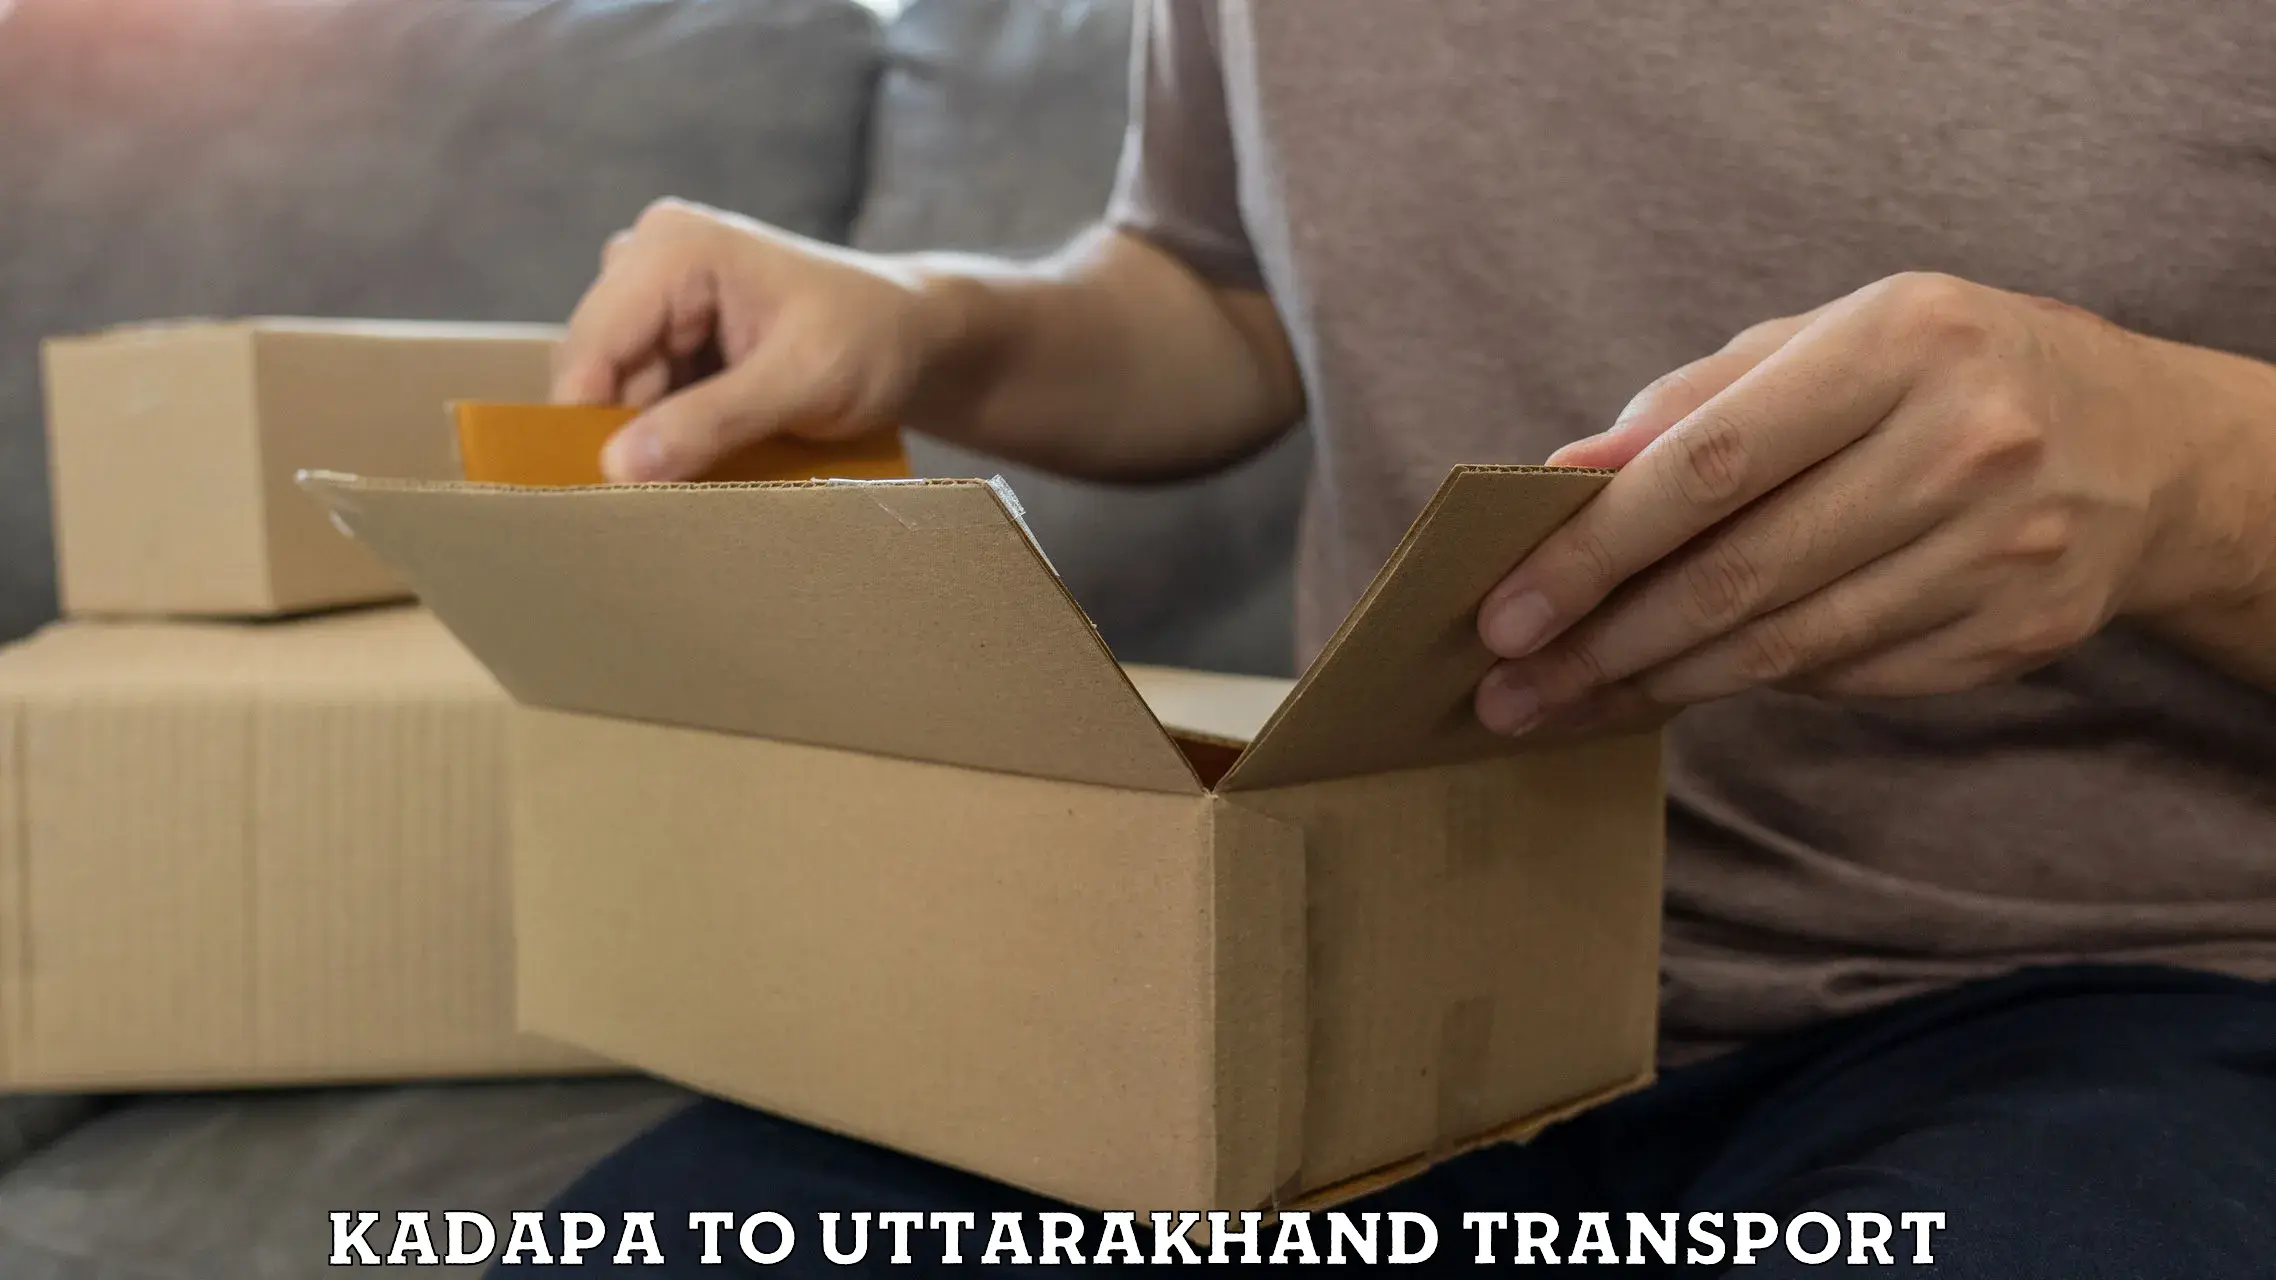 Bike shipping service Kadapa to Uttarakhand